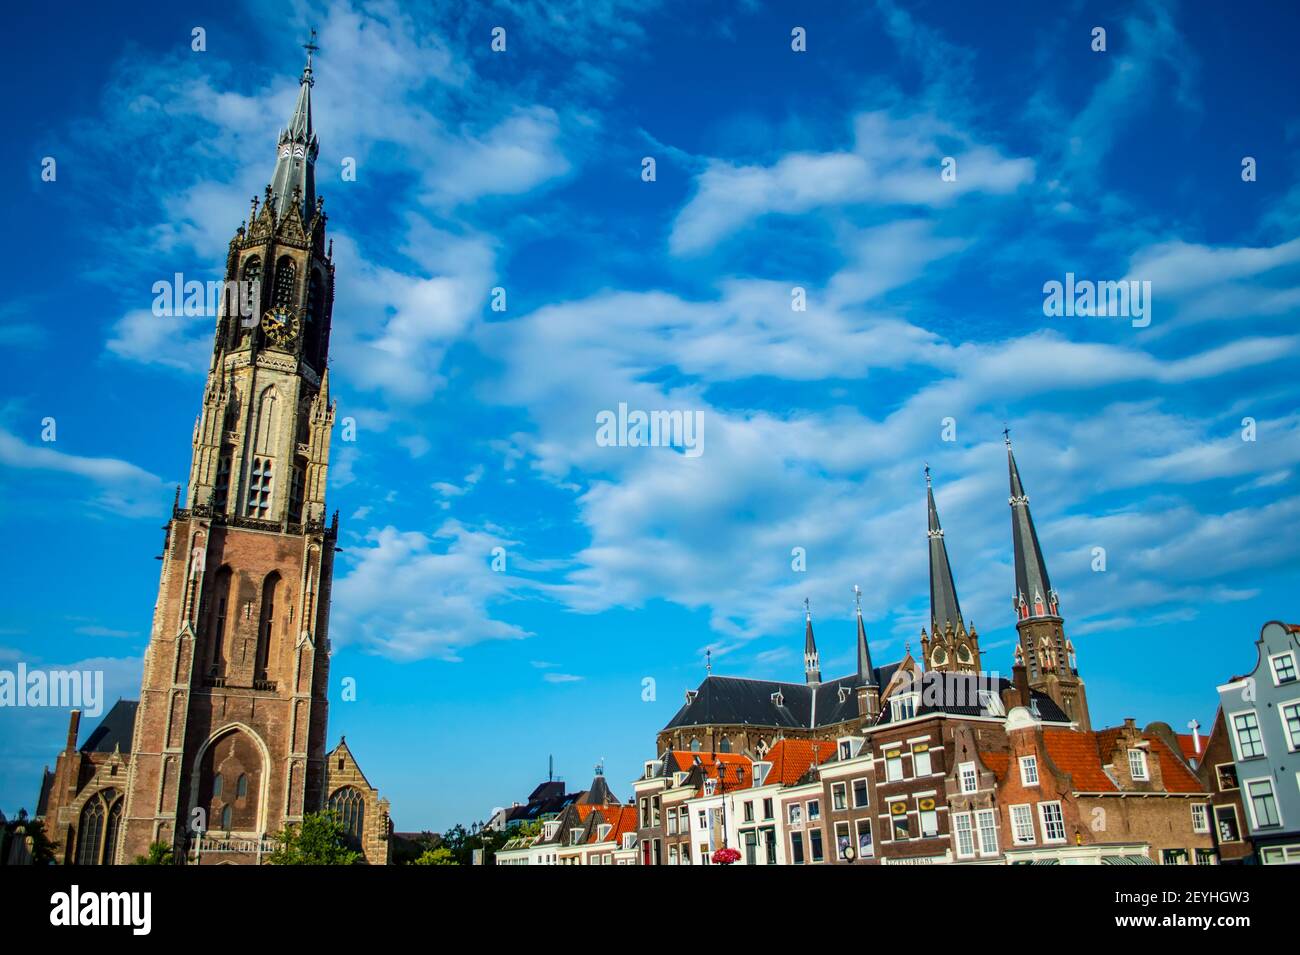 Delft, Niederlande - 11. Juli 2019: Niewe Kerk ("Neue Kirche") und Marktplatz der Stadt Delft, Niederlande Stockfoto